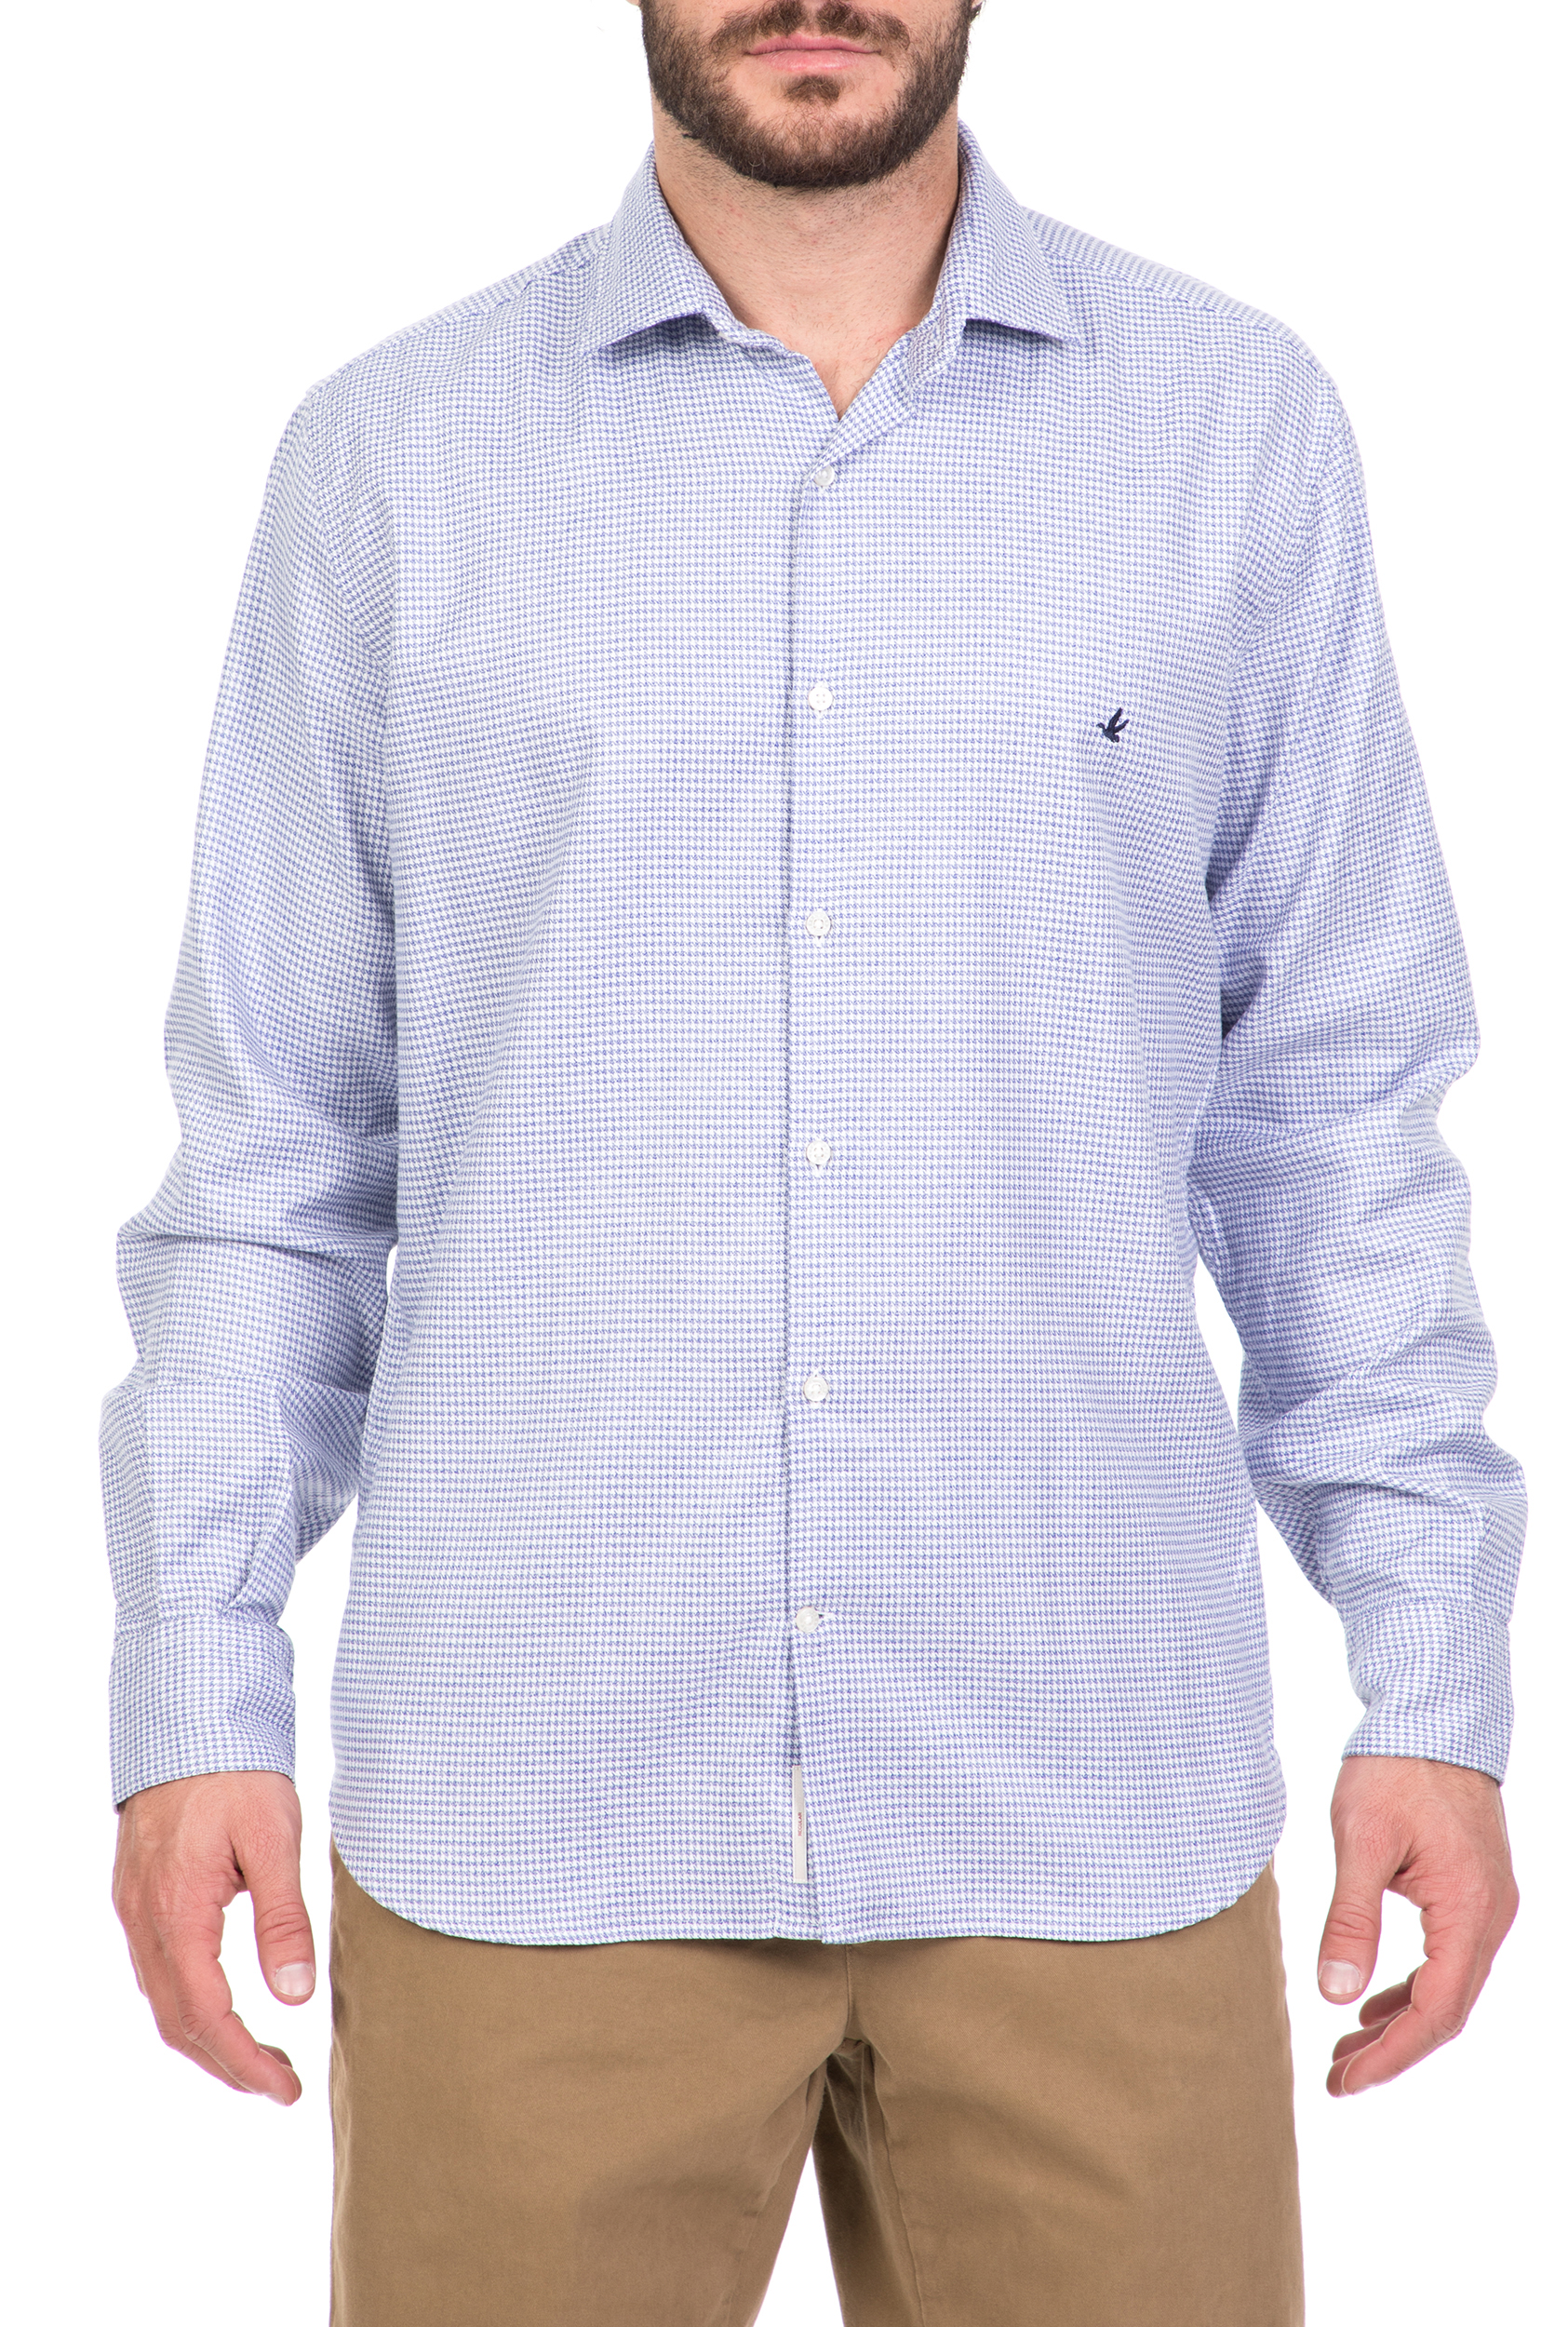 BROOKSFIELD - Ανδρικό μακρυμάνικο πουκάμισο BROOKSFIELD γαλάζιο Ανδρικά/Ρούχα/Πουκάμισα/Μακρυμάνικα